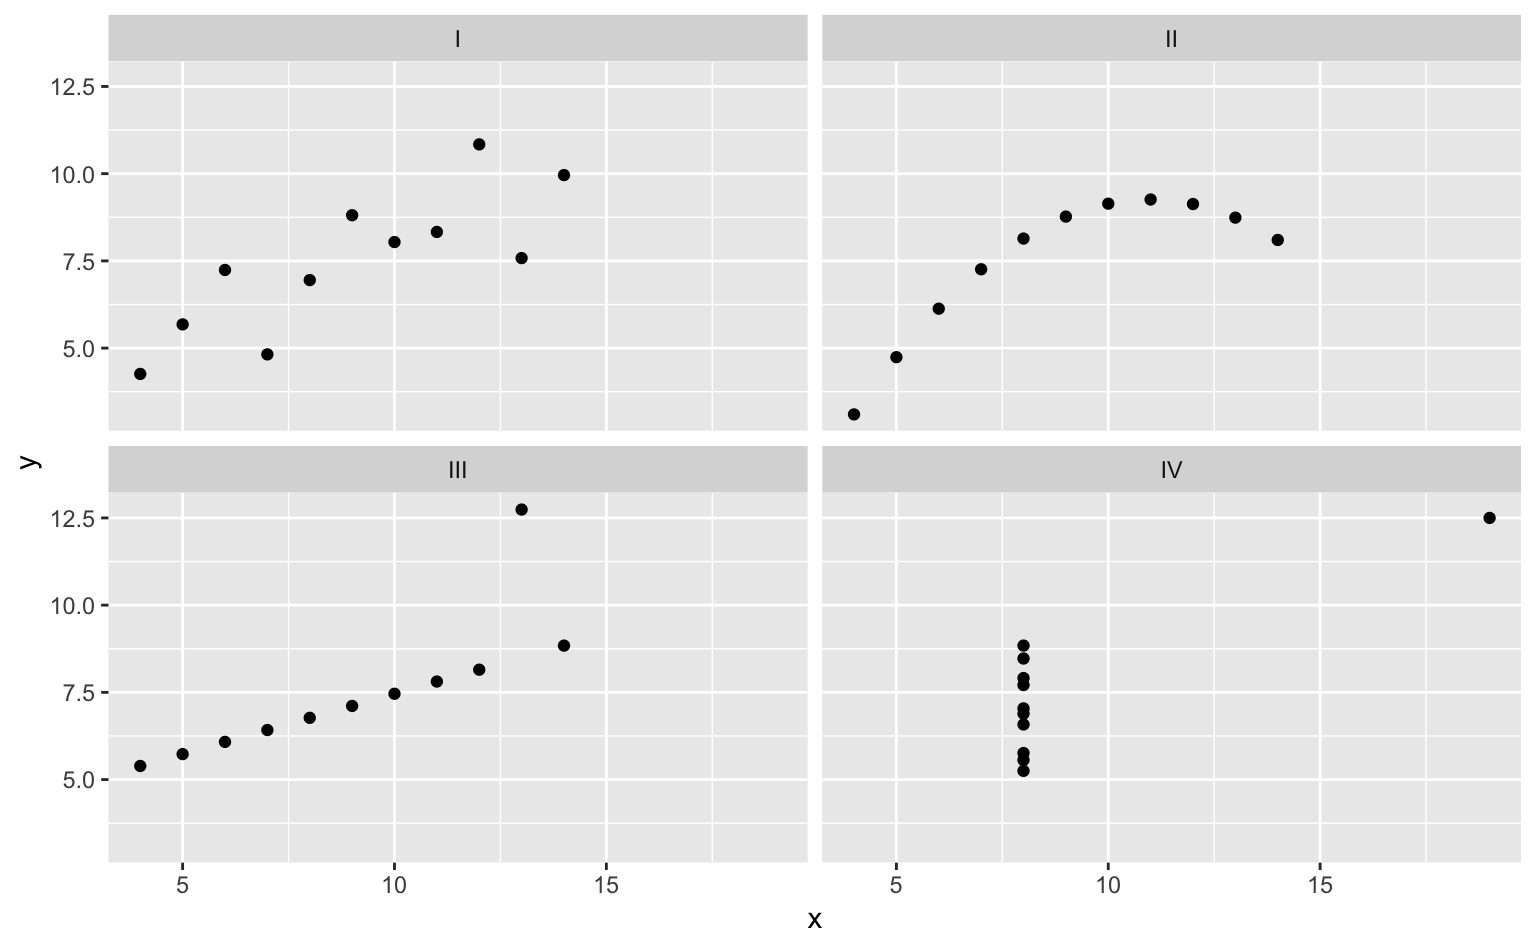 「アンスコムの例」の散布図。どの変数も統計量（平均値、標準偏差、相関係数）の上では同じだが、実際は明らかに異なるパターンを示していることがひと目でわかる。